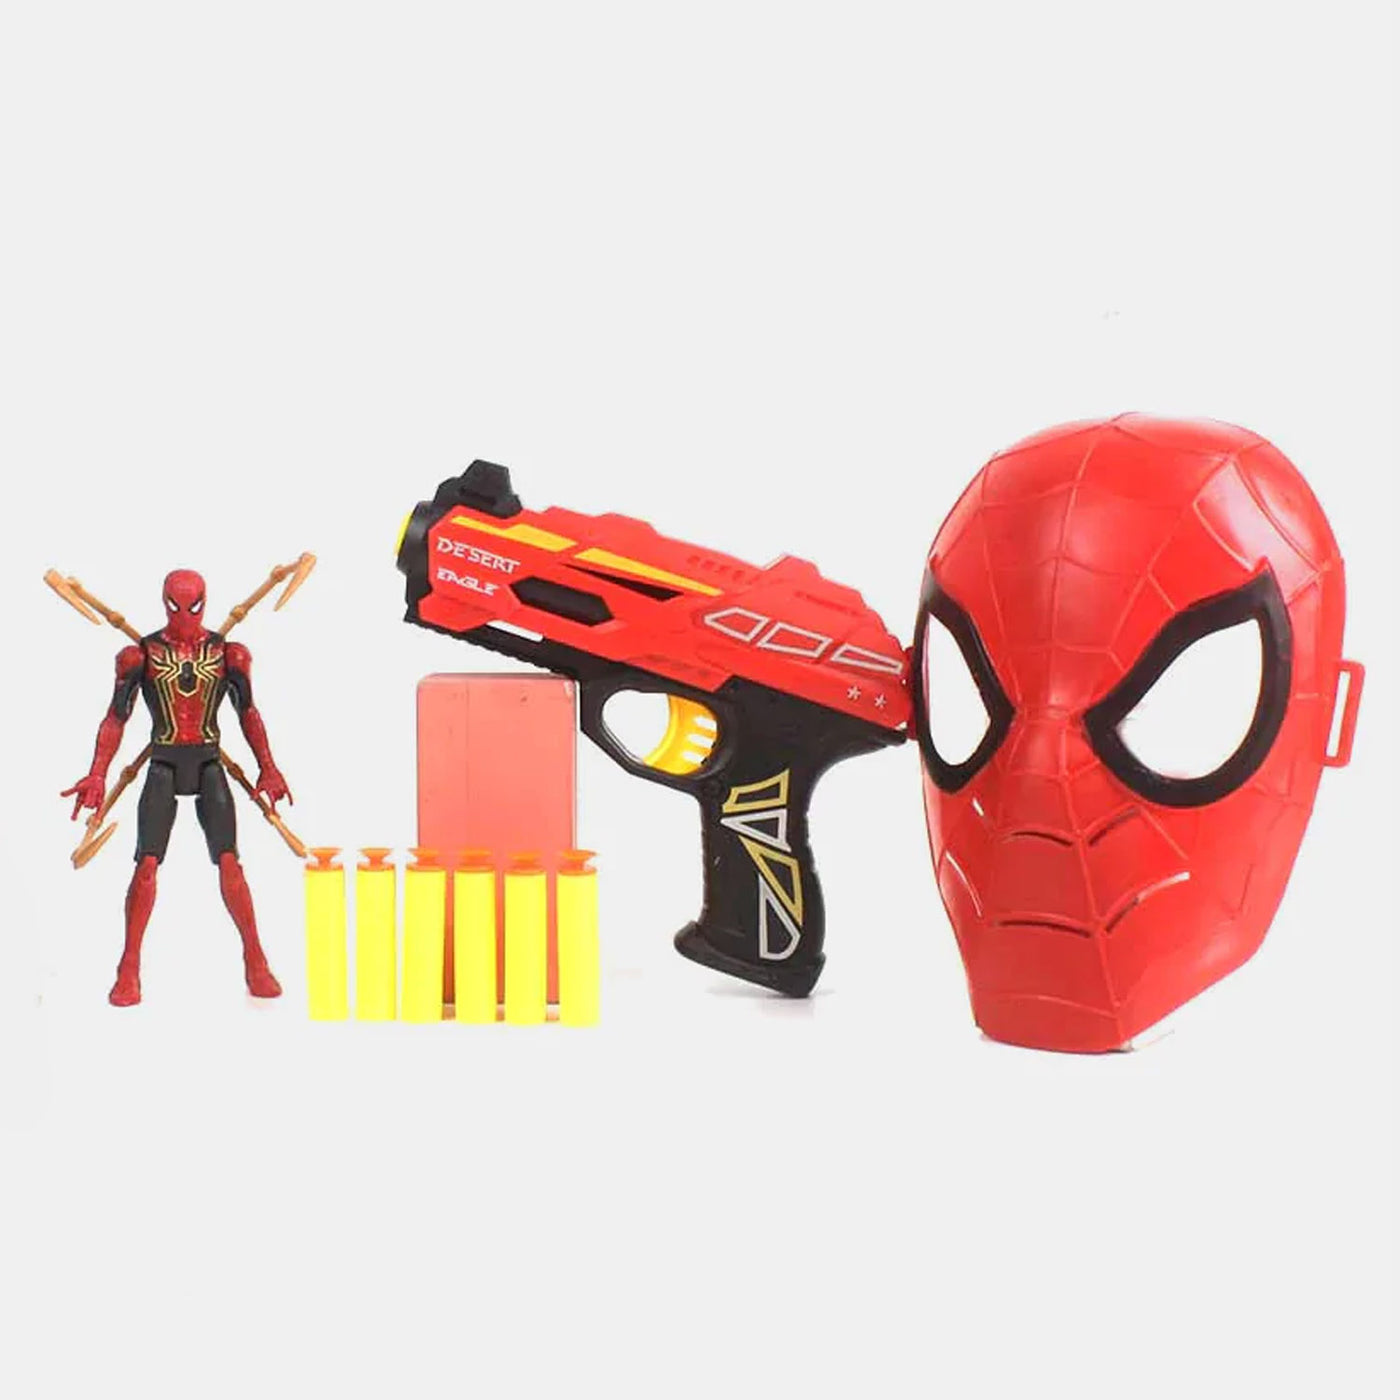 Eva Bullet Gun Toy For kids